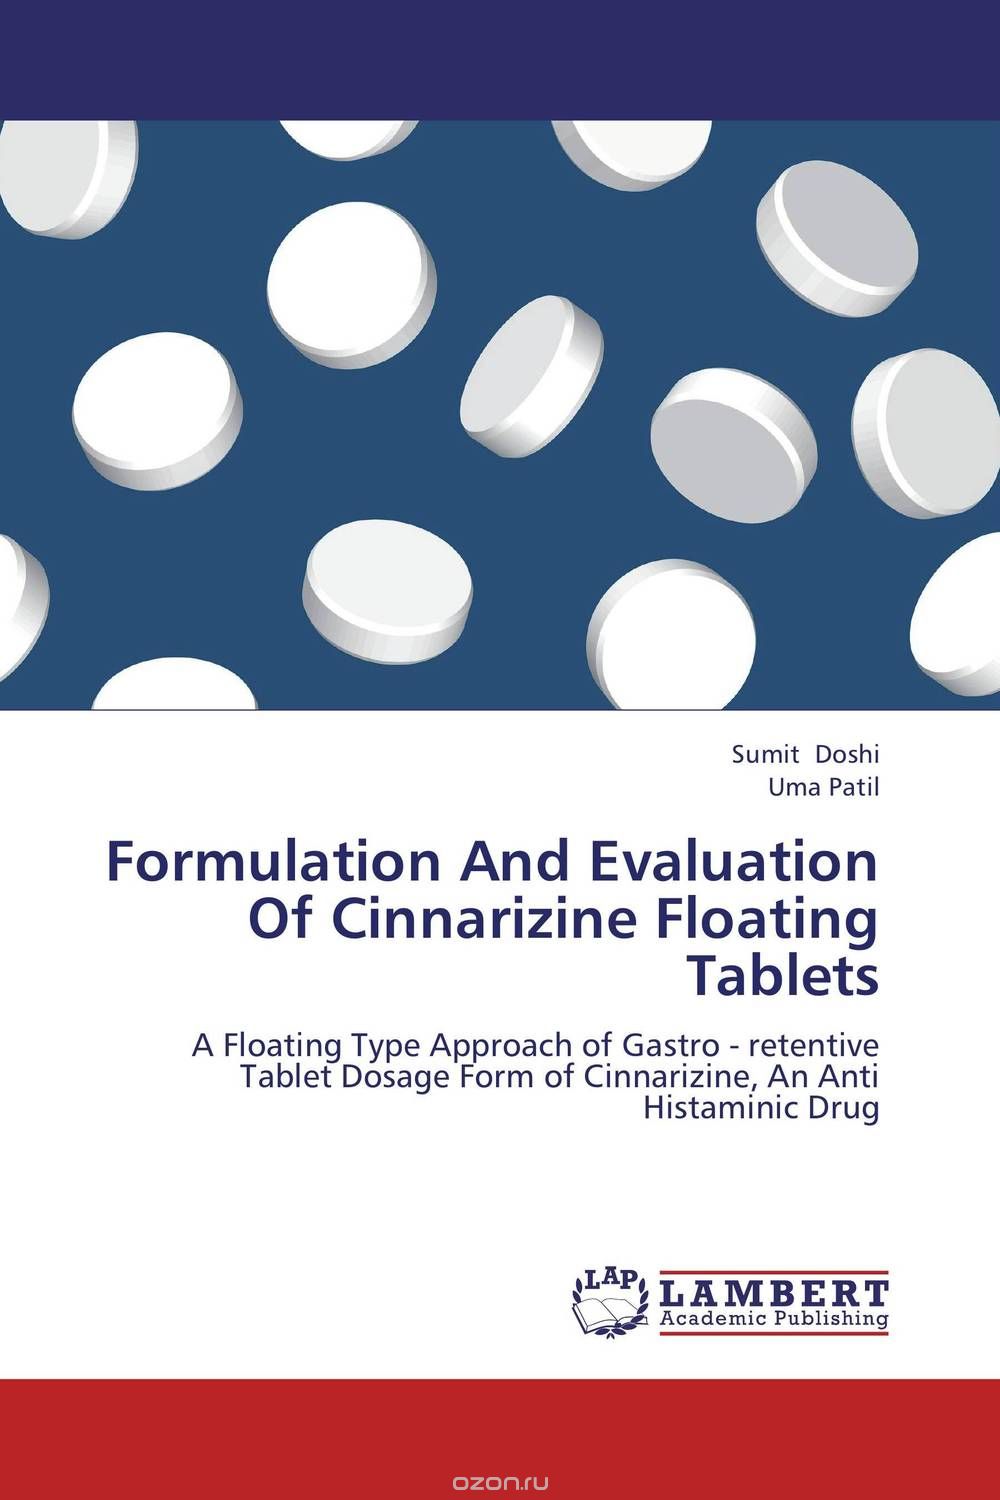 Скачать книгу "Formulation And Evaluation Of Cinnarizine Floating Tablets"